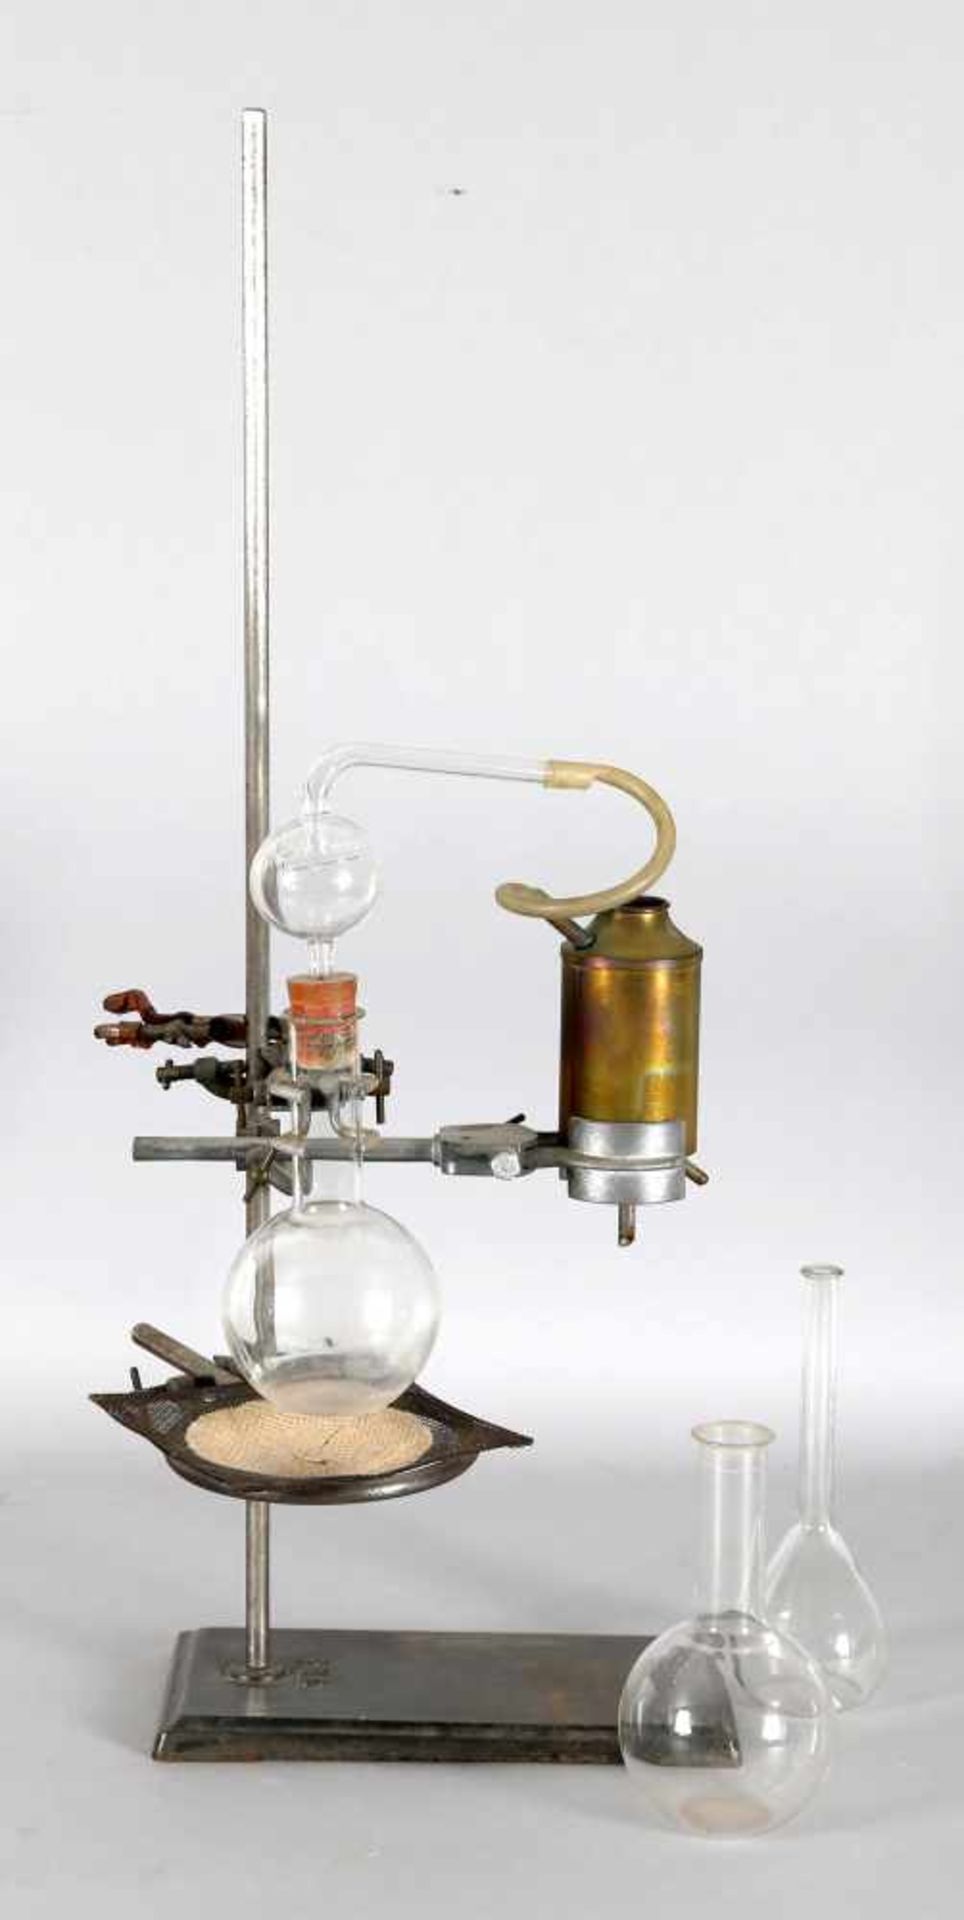 Destillationsgerät Prolabo, wohl 1. H. 20. Jh.gusseiserner Ständer mit verschiedenen